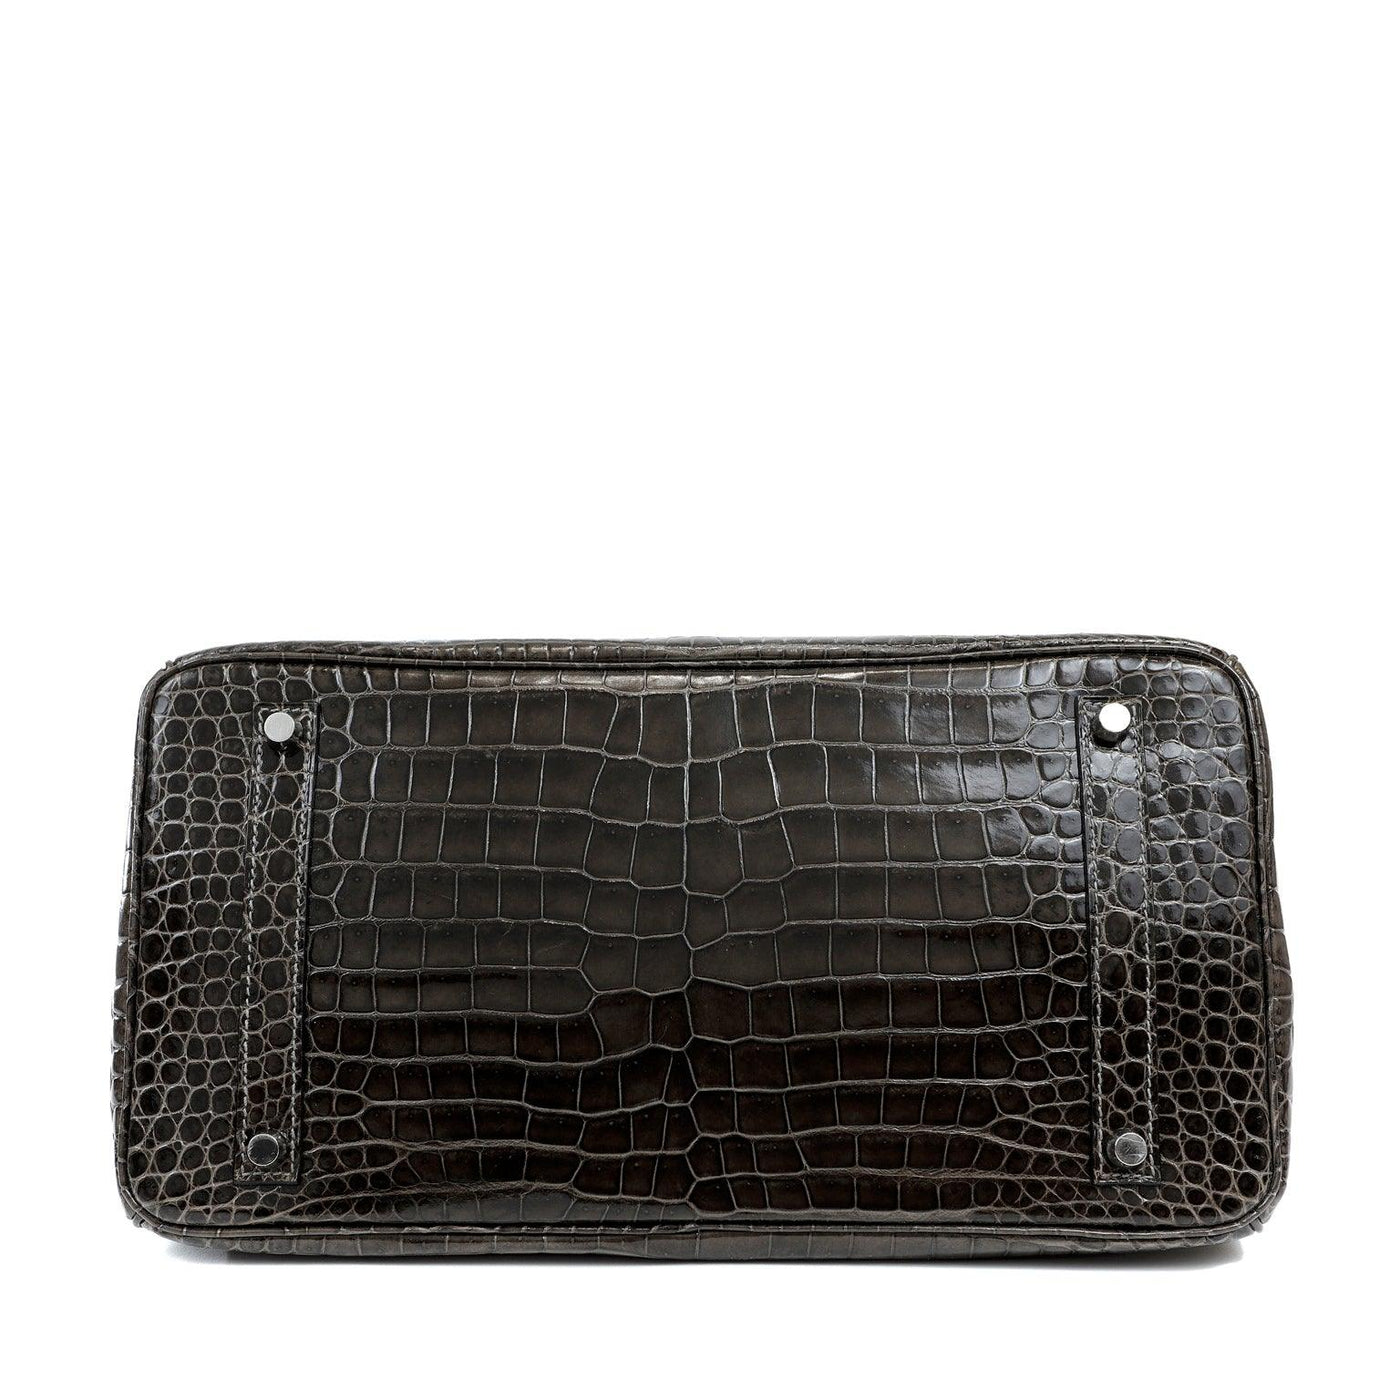 Hermès 35cm Graphite Crocodile Birkin w/ Palladium Hardware - Only Authentics